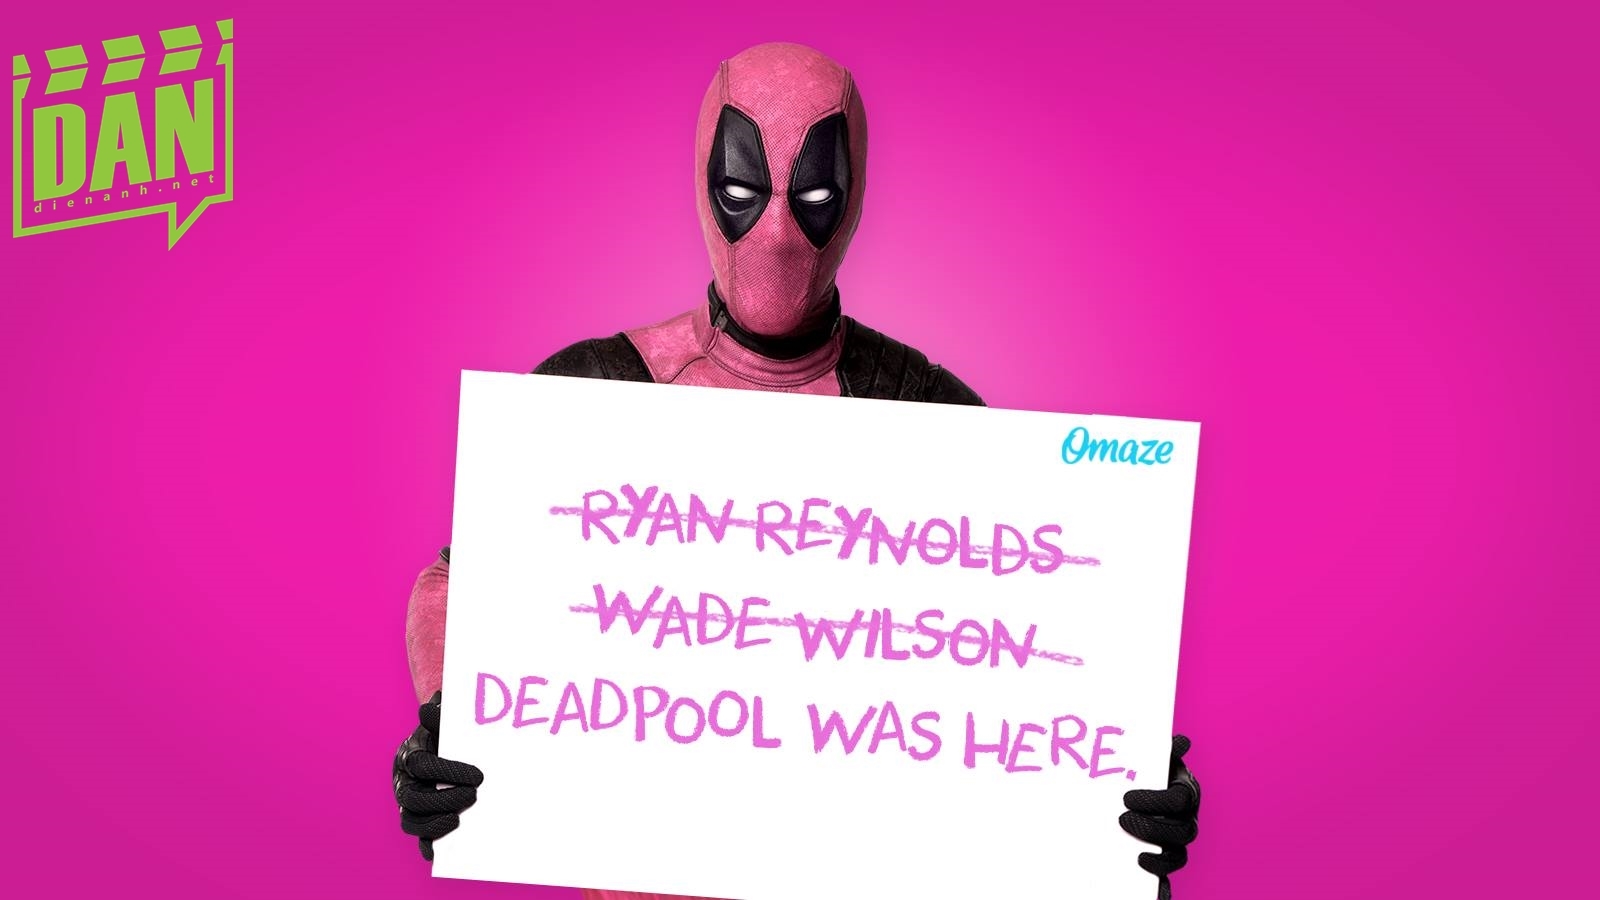 Anh không biết Ryan Reynolds hay Wade Wilson là ai đâu ha. 